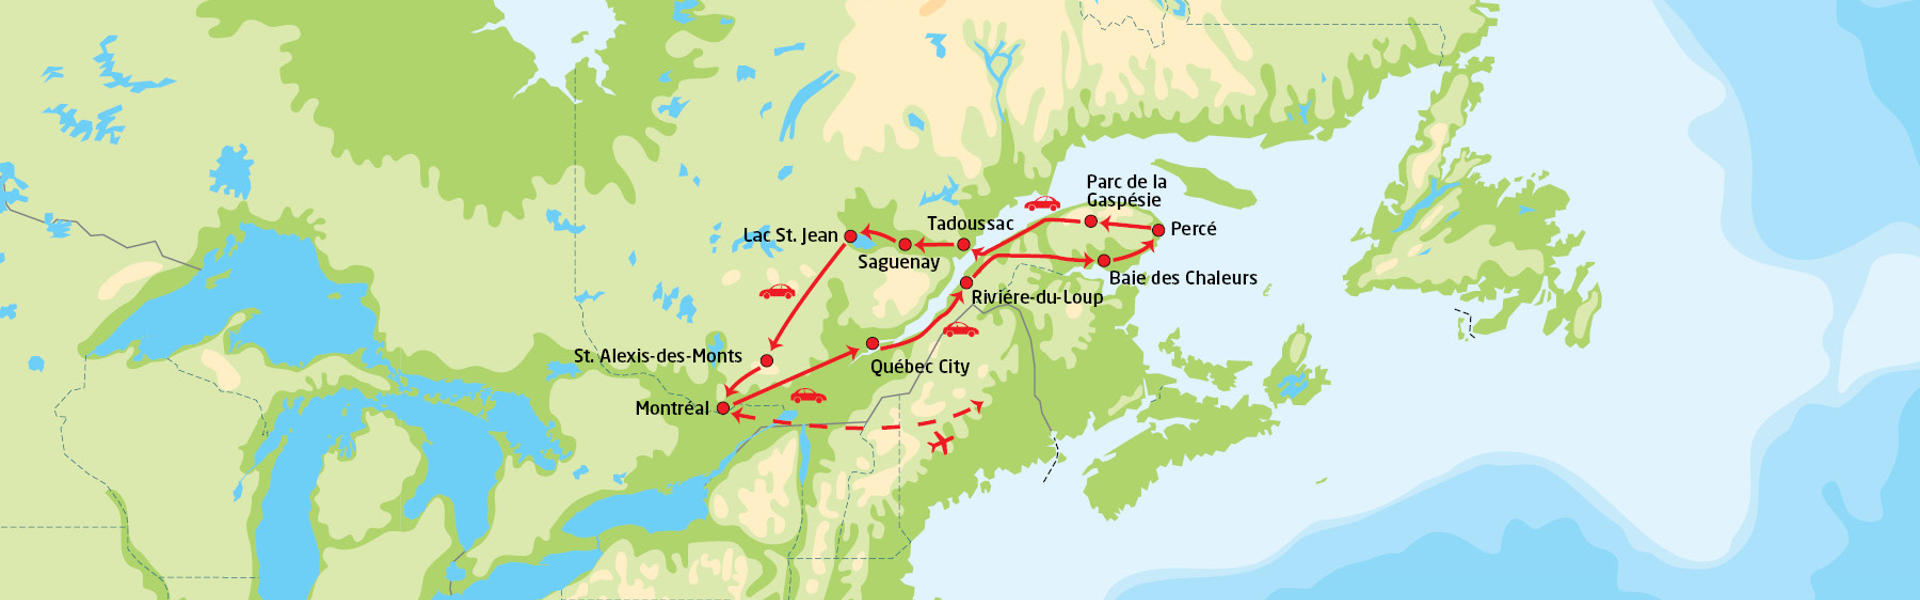 Quebecs høydepunkter | Reiserute